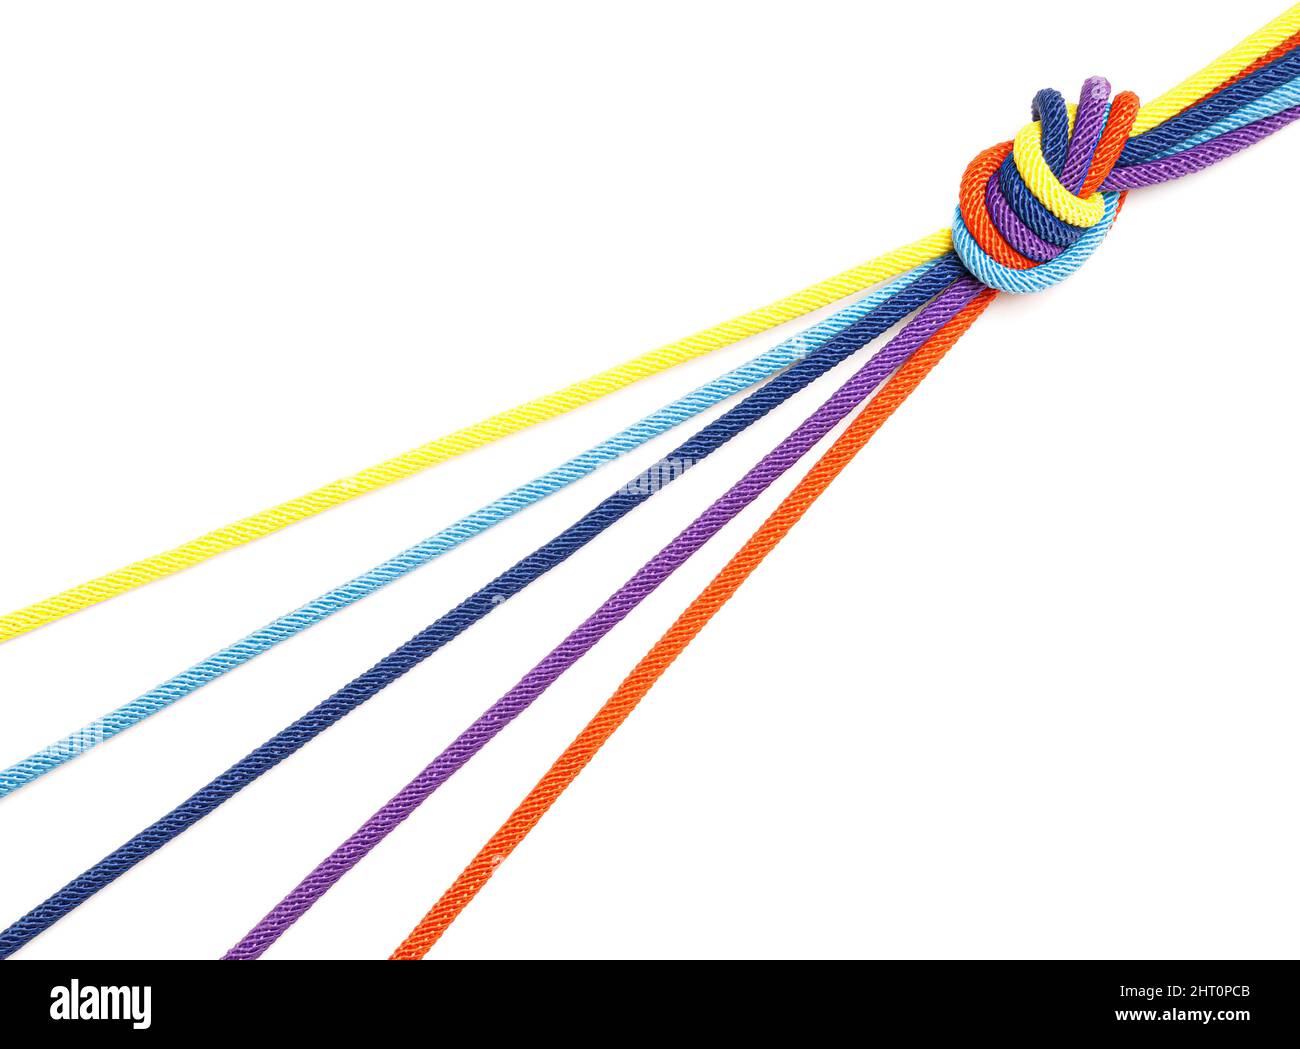 Fünf mehrfarbige Kordeln laufen in einem Knoten zusammen, der auf weißem Hintergrund isoliert ist. Kreatives Drehkreuz-Konzept. Stockfoto